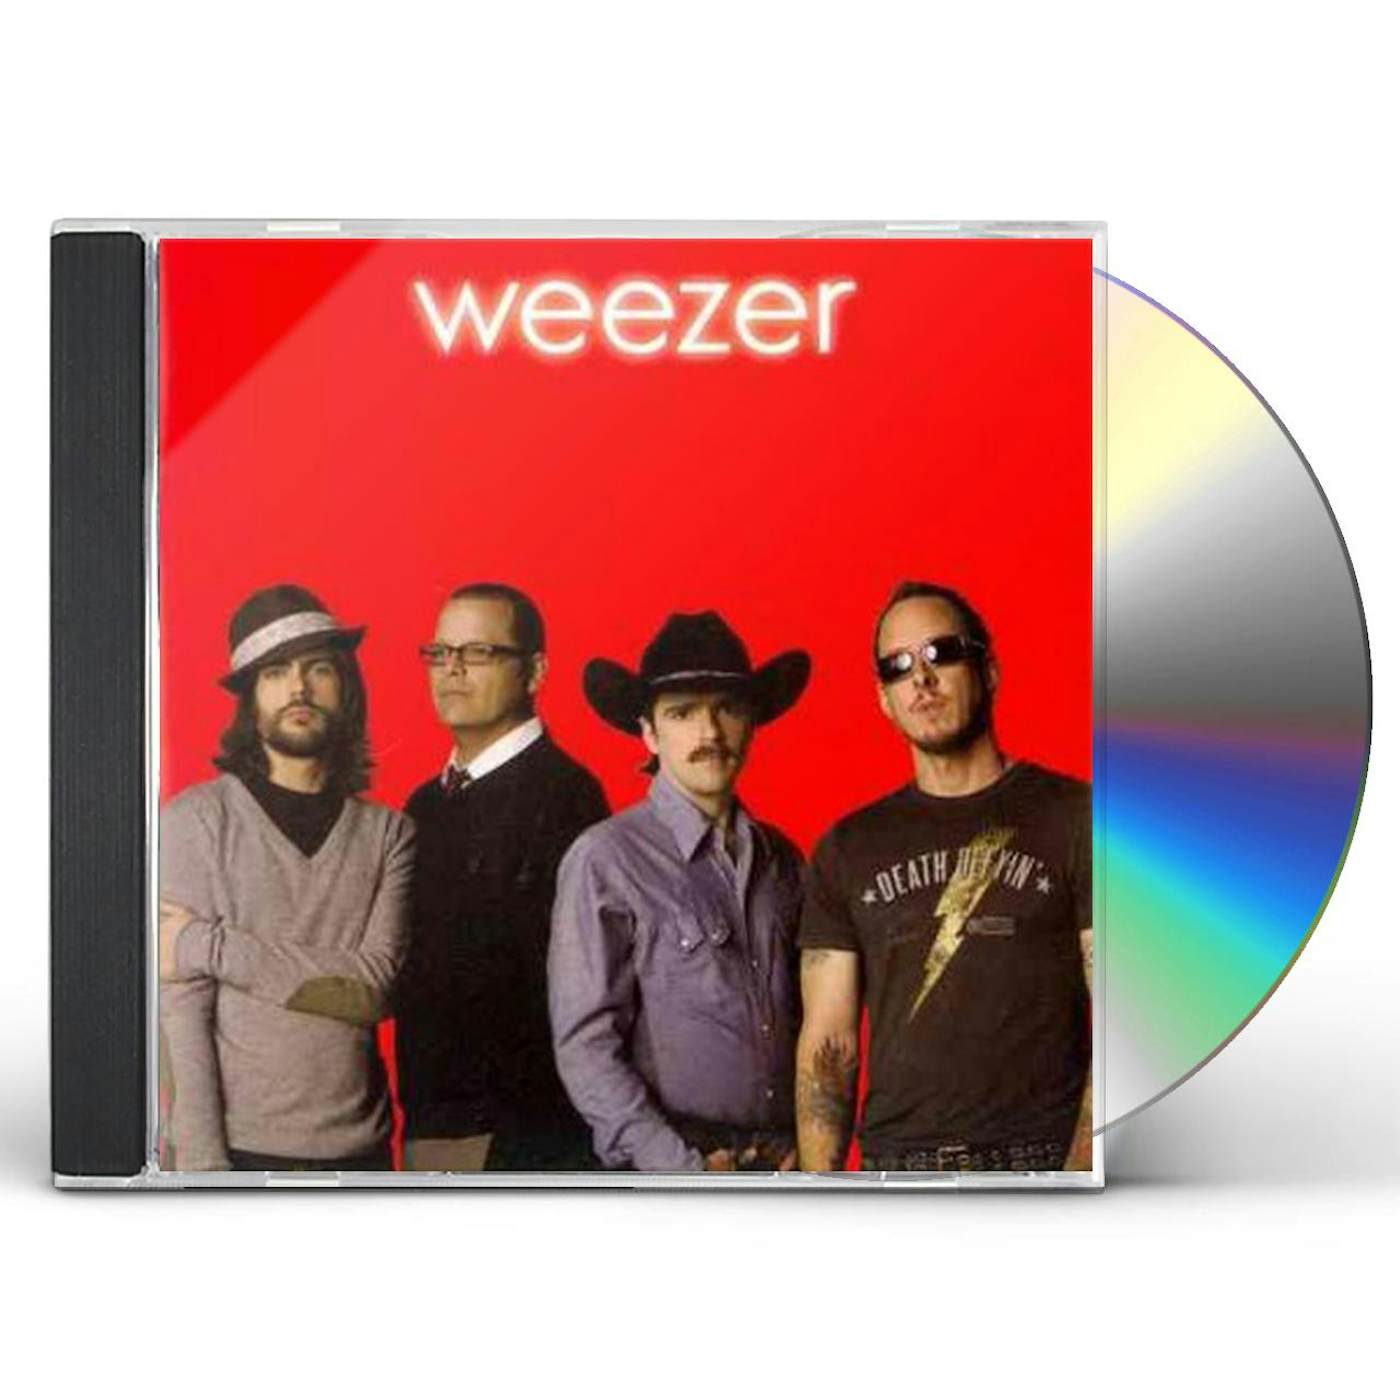 WEEZER (RED ALBUM) CD